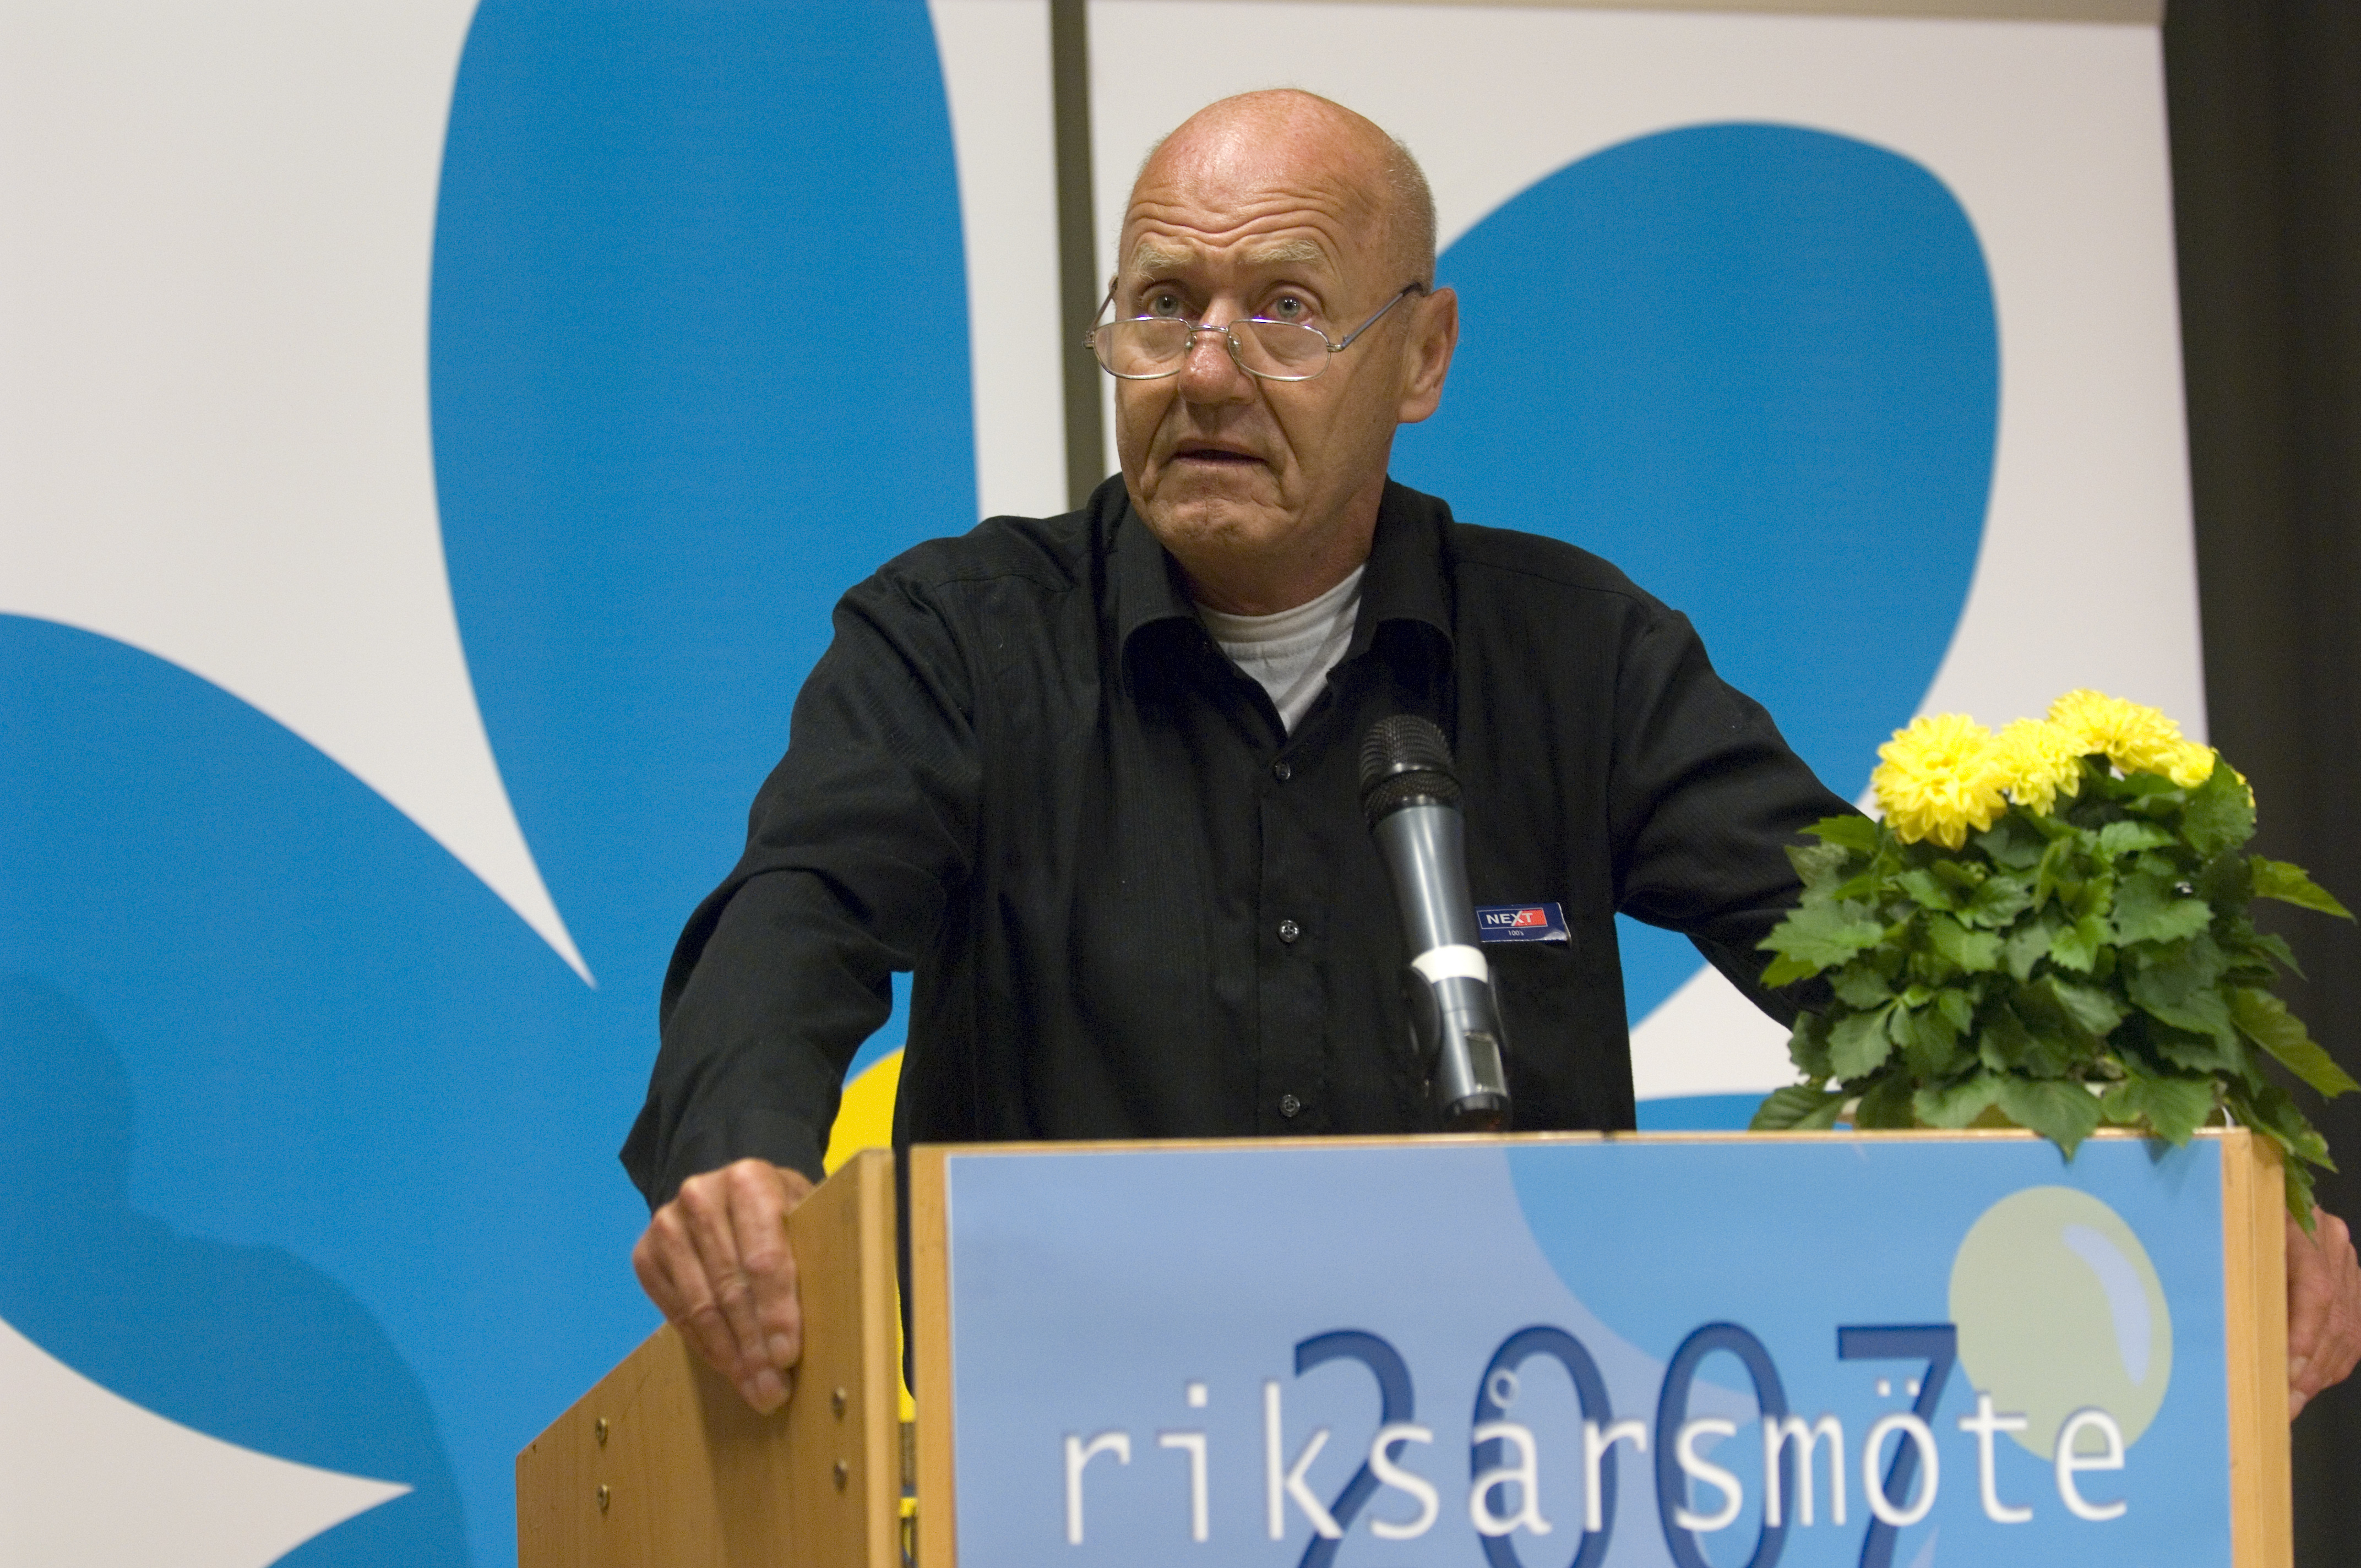 Riksdagsvalet 2010, Sten Andersson, Avliden, Avlidit, Moderaterna, Sverigedemokraterna, Död